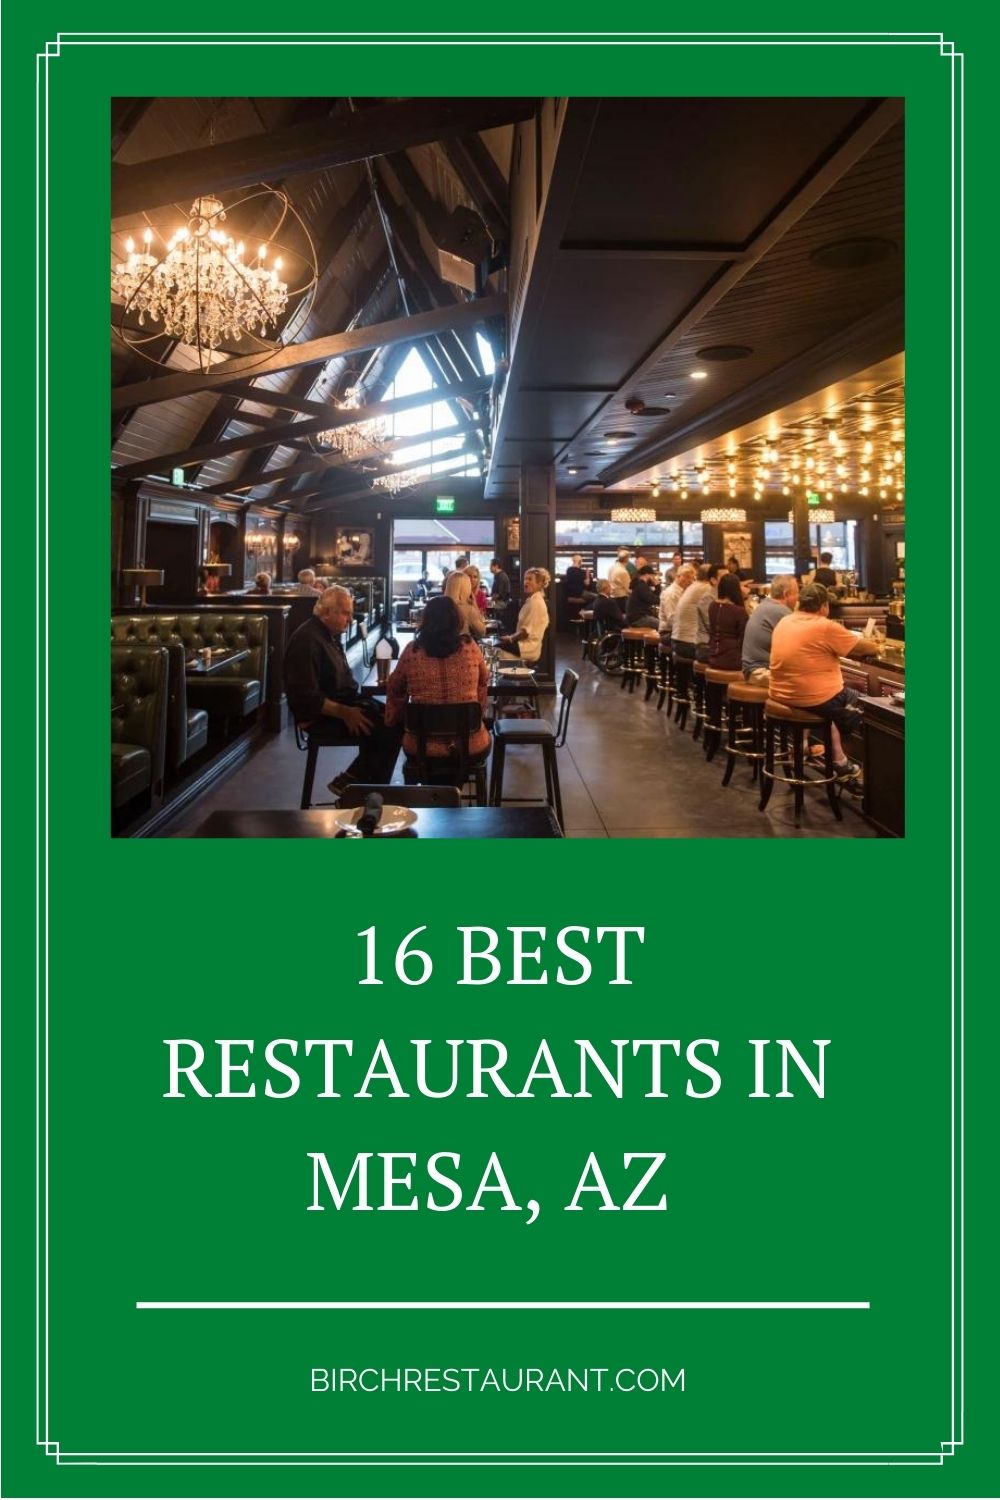 Best Restaurants in Mesa